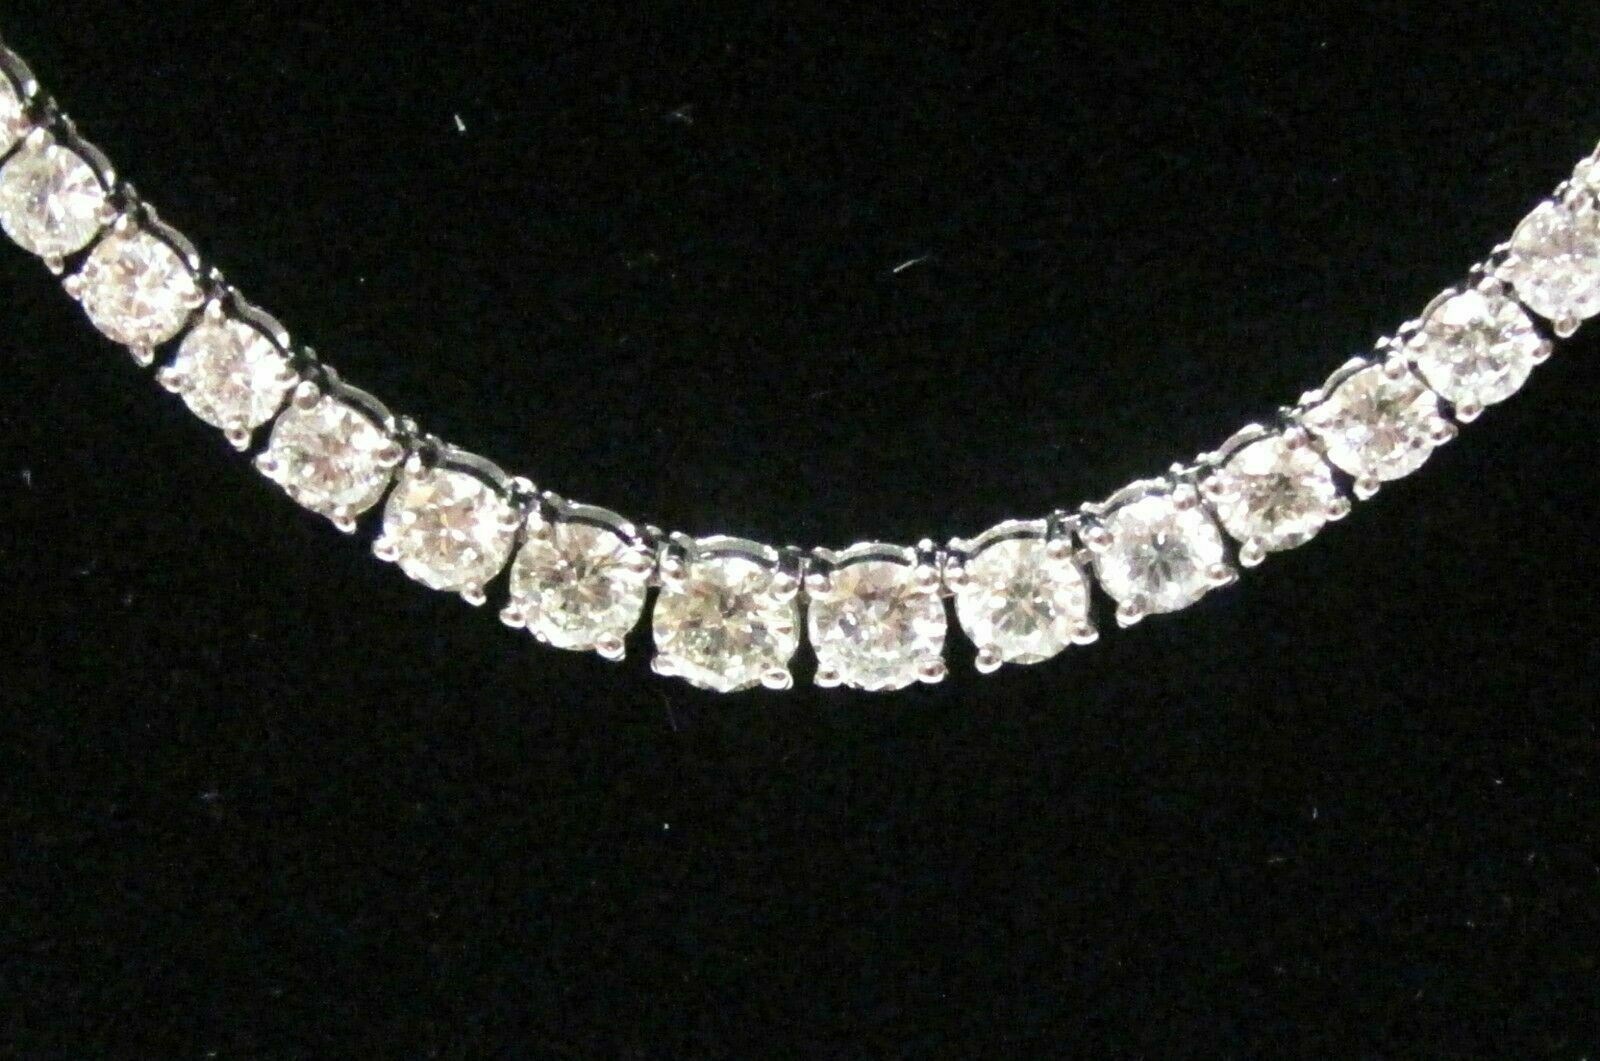 12.55 TCW Round Brilliant Cut Diamond Riviera Necklace F-G VS2 18k White Gold